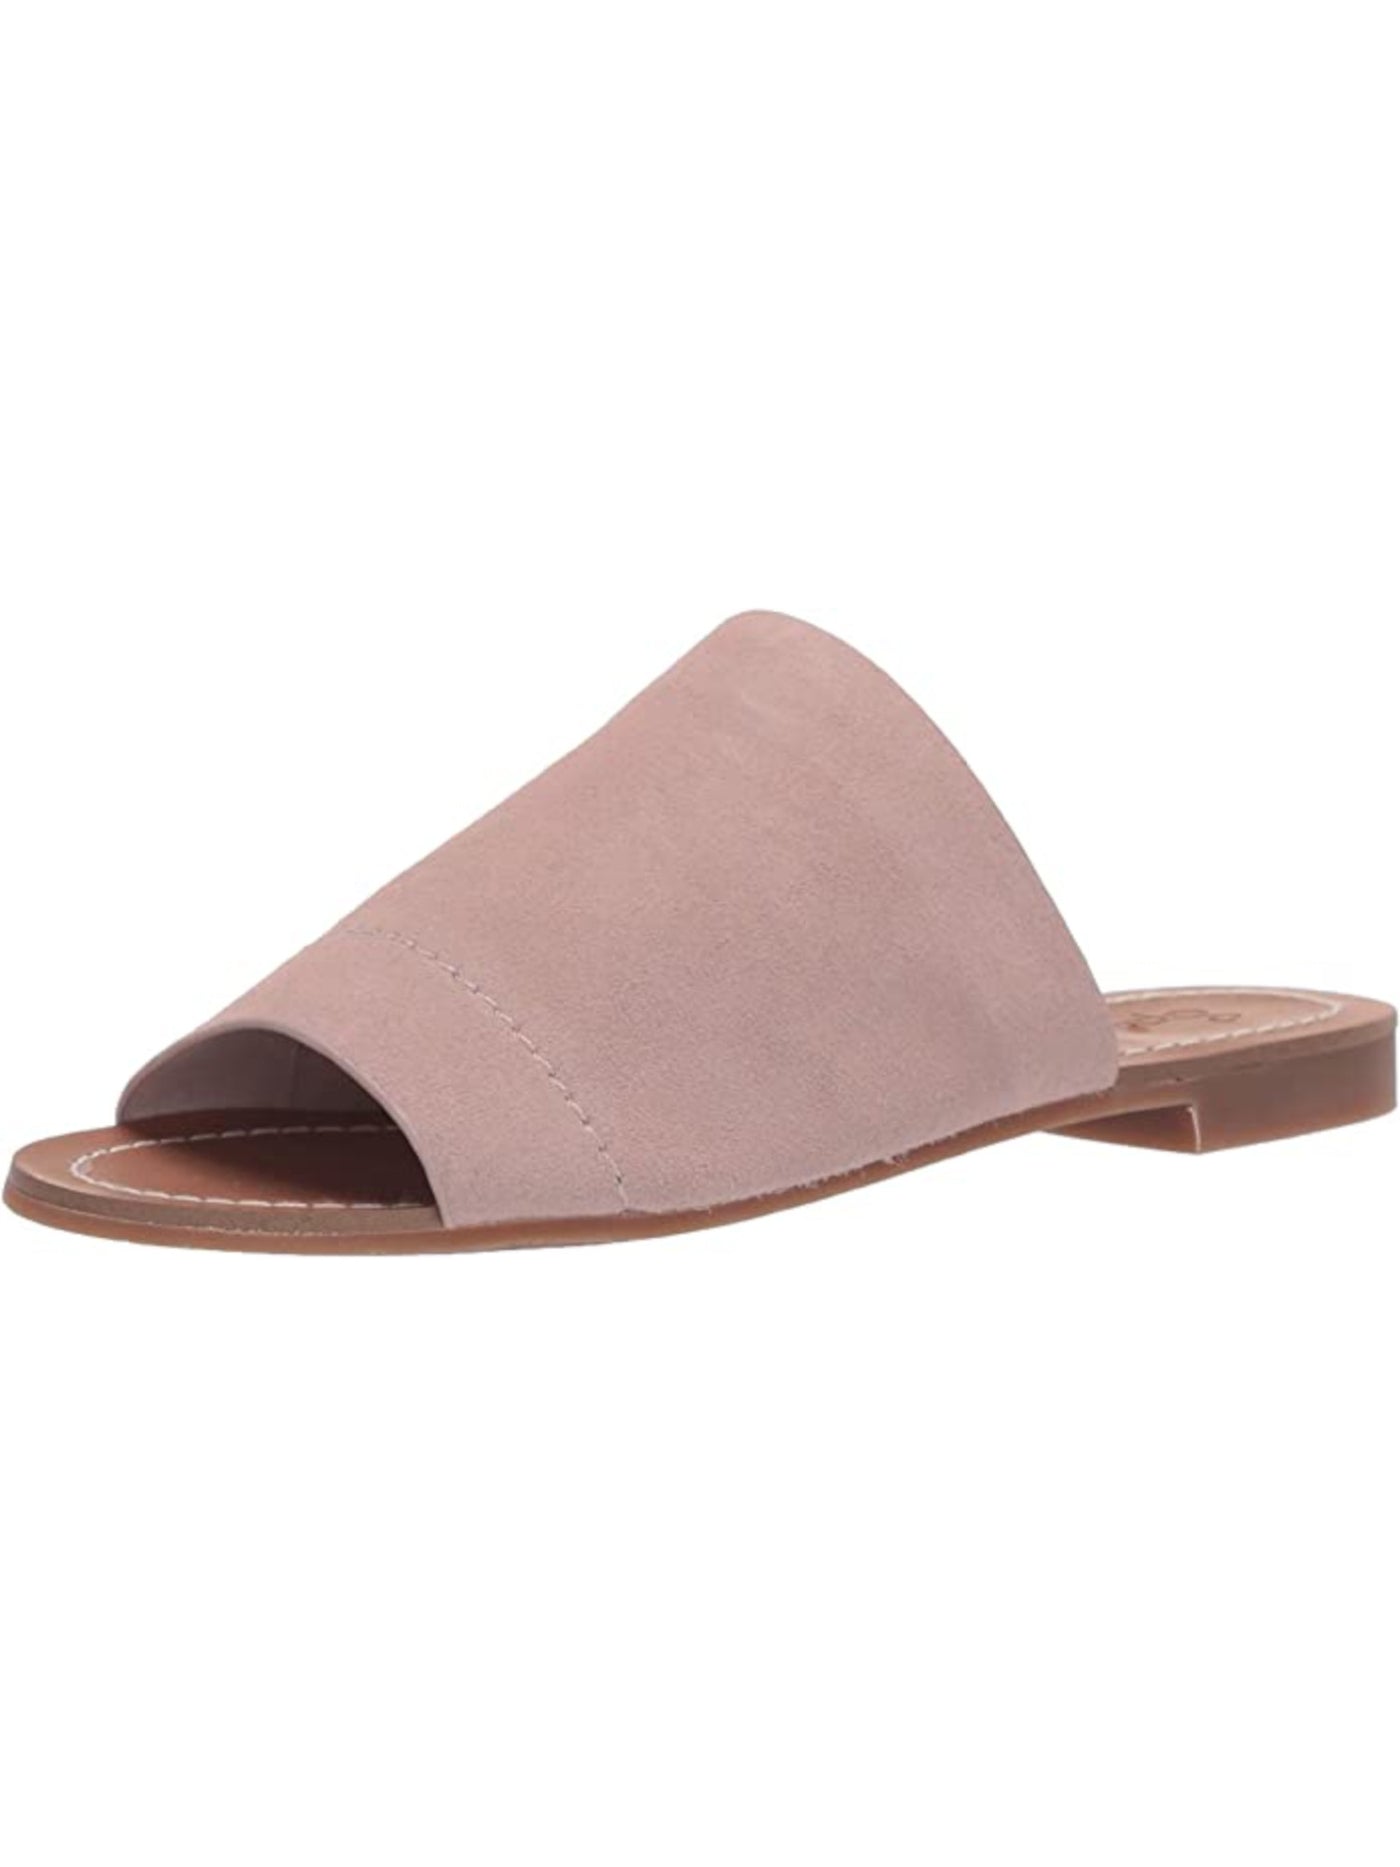 SPLENDID Womens Beige Goring Mavis Round Toe Slip On Leather Slide Sandals Shoes 8.5 M